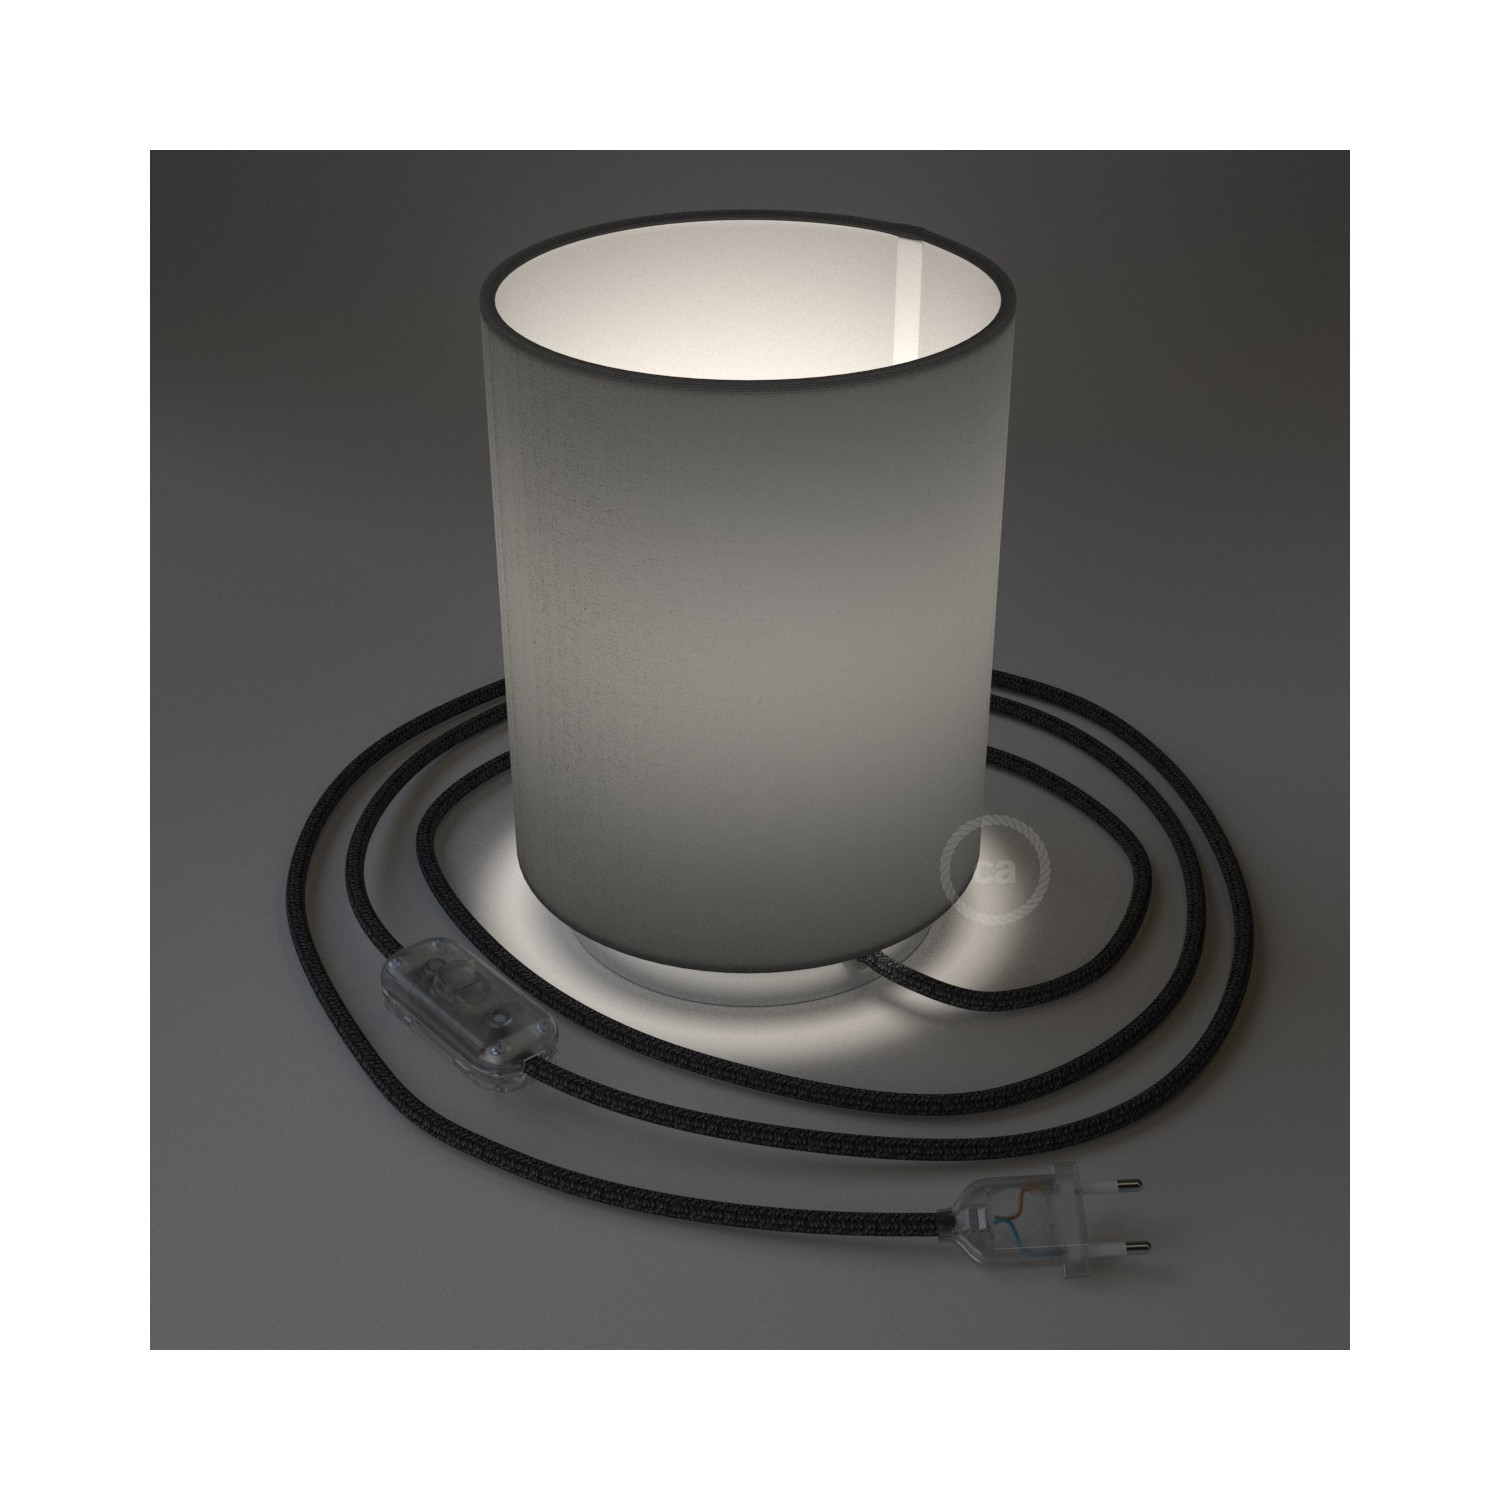 Posaluce i metall med Cilindro Antracitgrå lampskärm, komplett med textilkabel, sladdströmbrytare och 2-polig stickpropp.